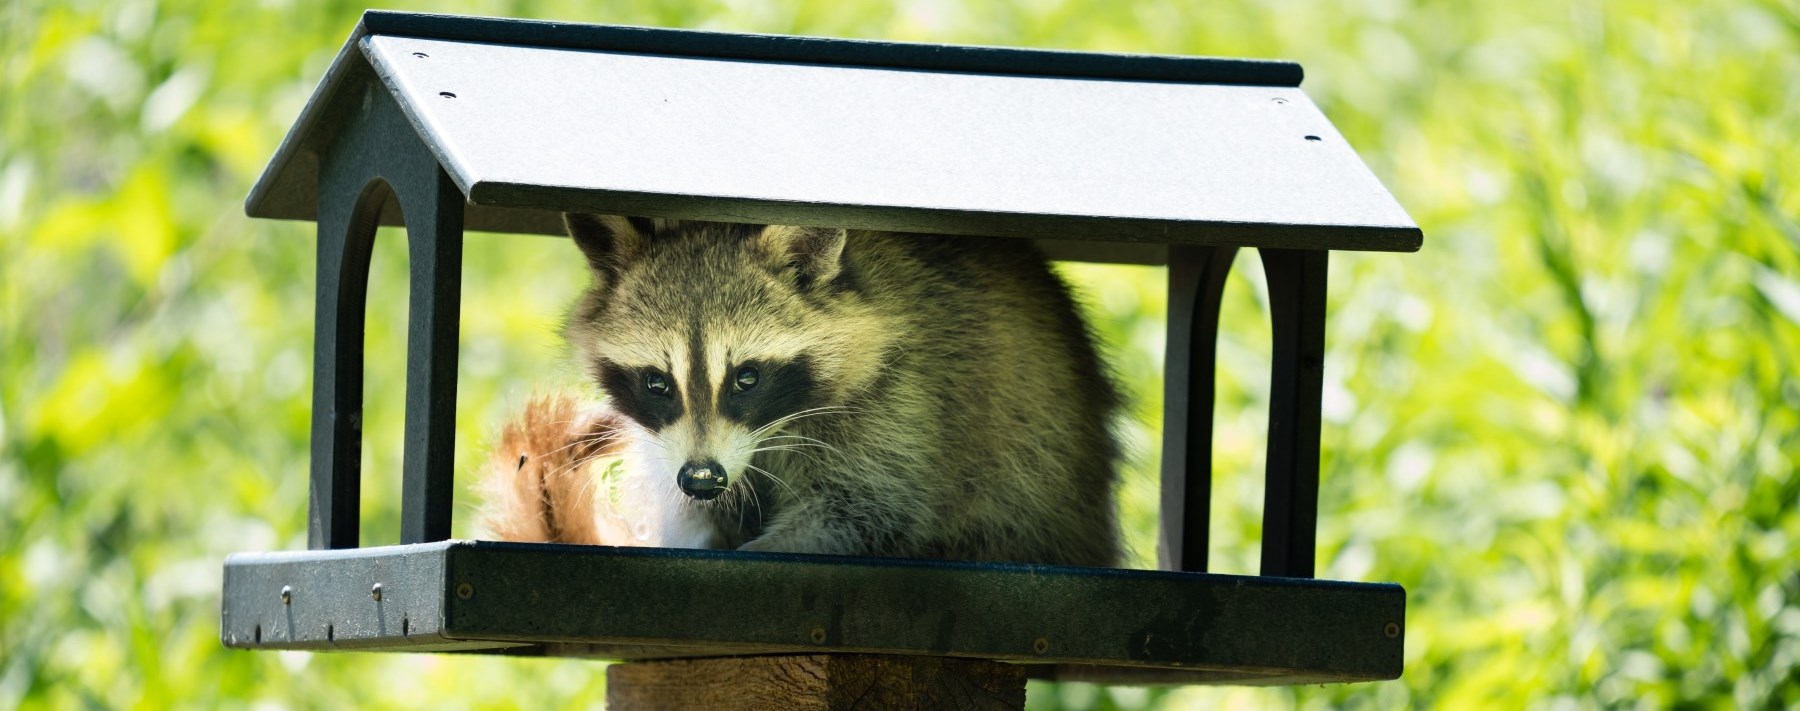 Grey raccoon sitting in a mailbox